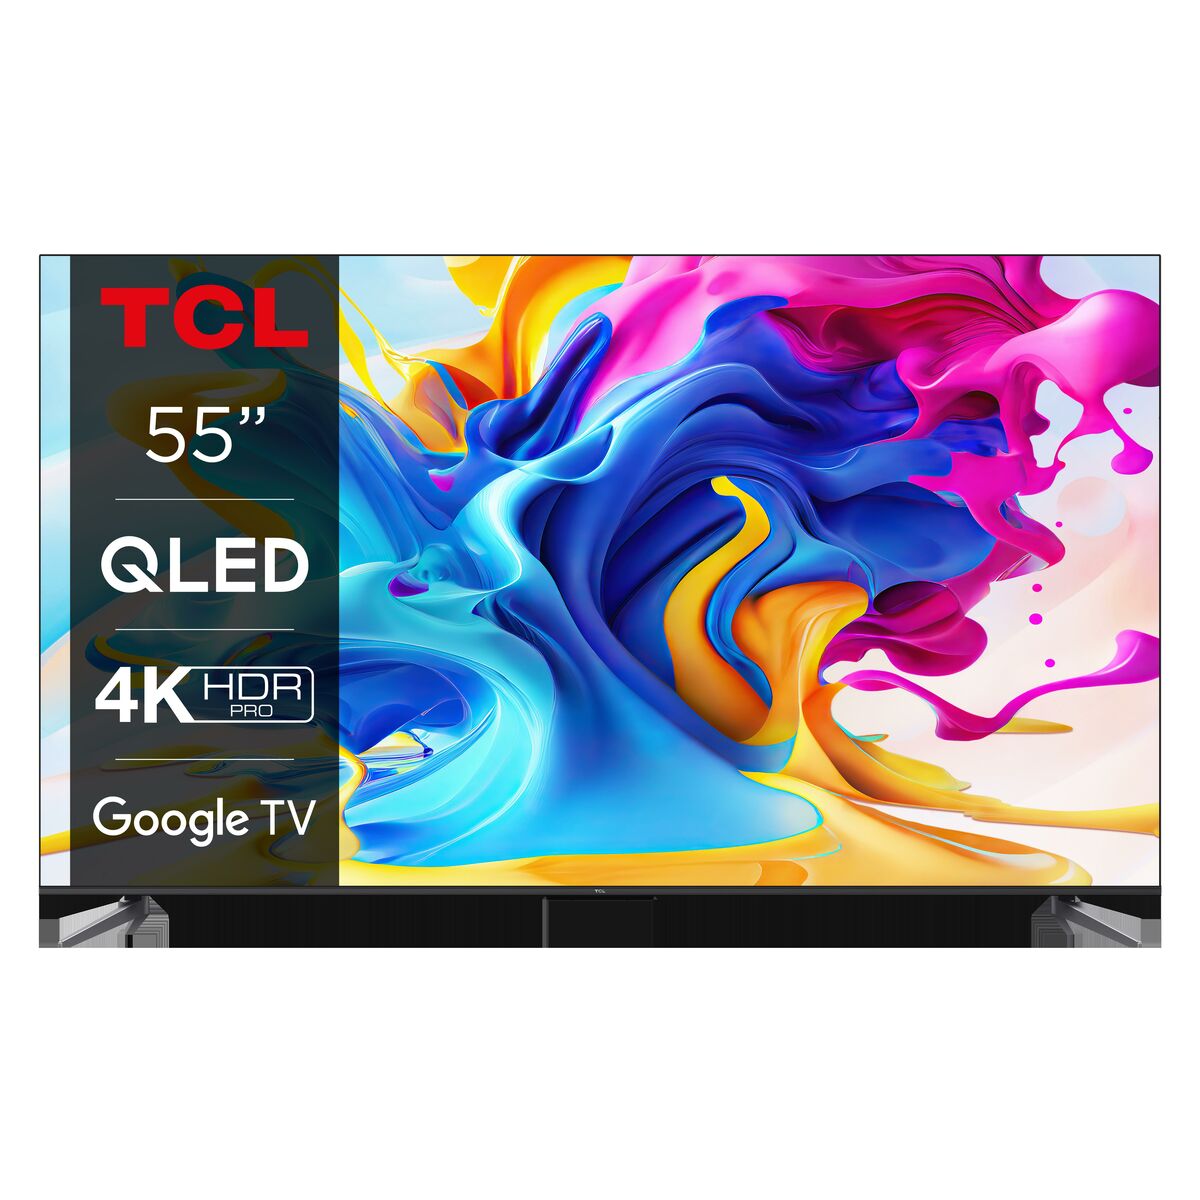 TCL 55P631 Televisor Smart TV 55 Direct LED UHD 4K HDR